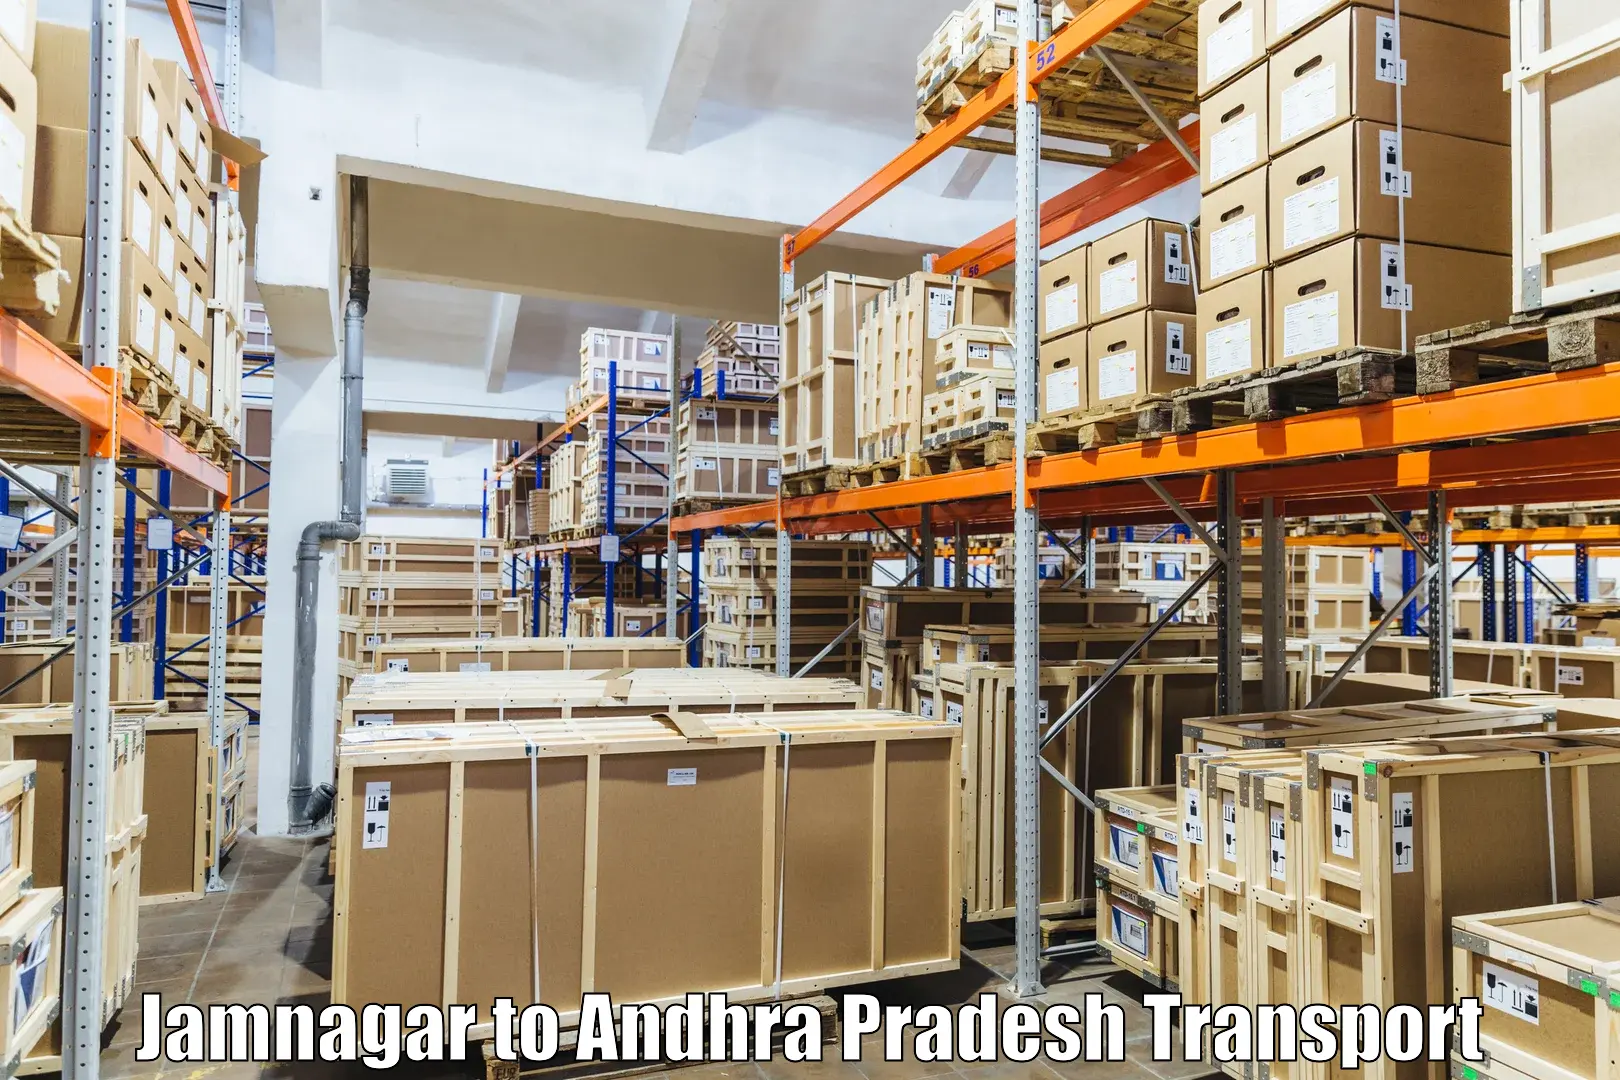 Shipping partner Jamnagar to Yerravaram